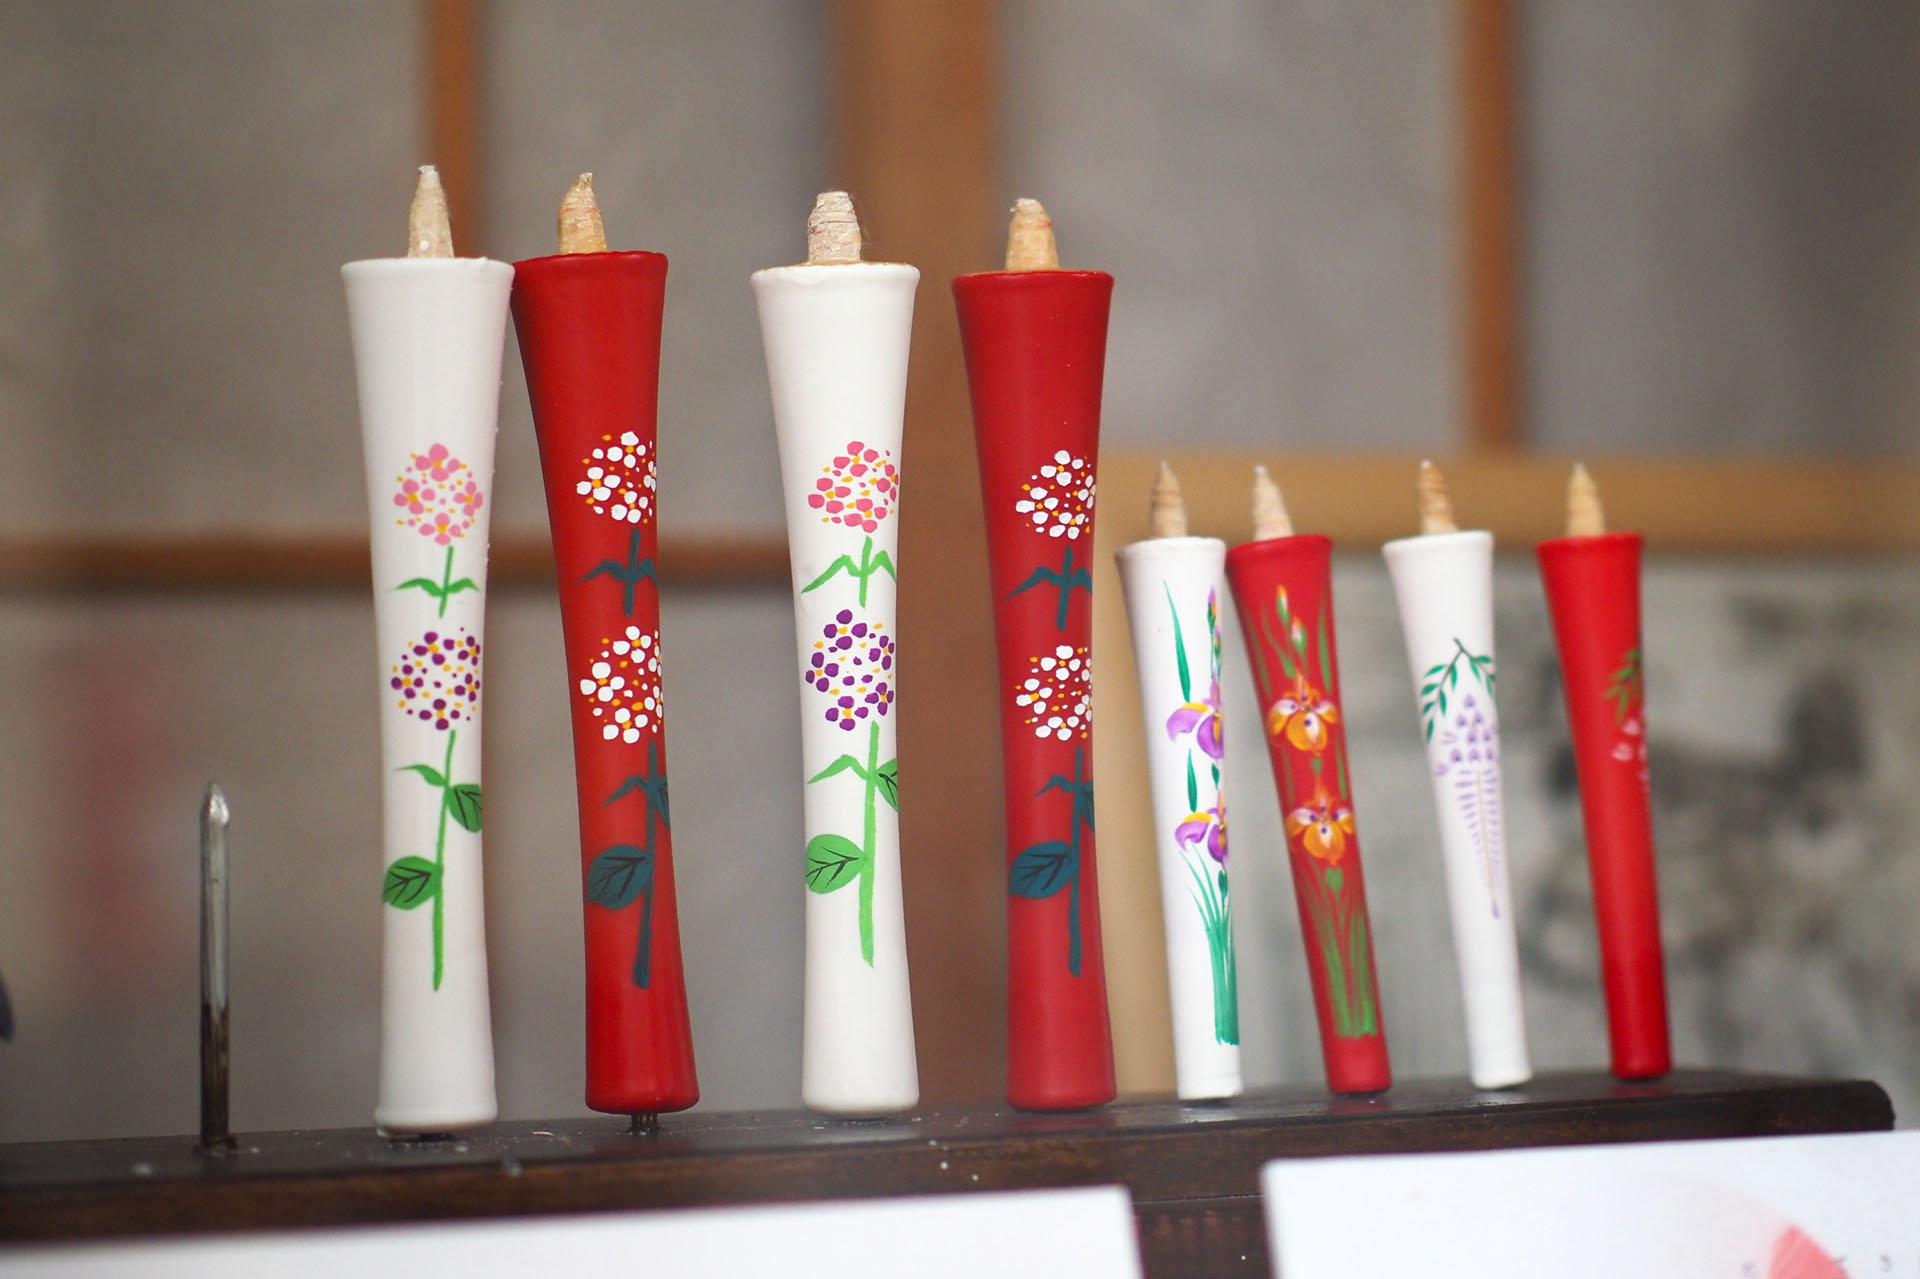 独特の燃え方に特徴がある、京都の和蝋燭。和紙に「い草」の髄を巻き付けた芯が空気の流れを作るため、風がなくても炎がゆっくりと揺らめく。